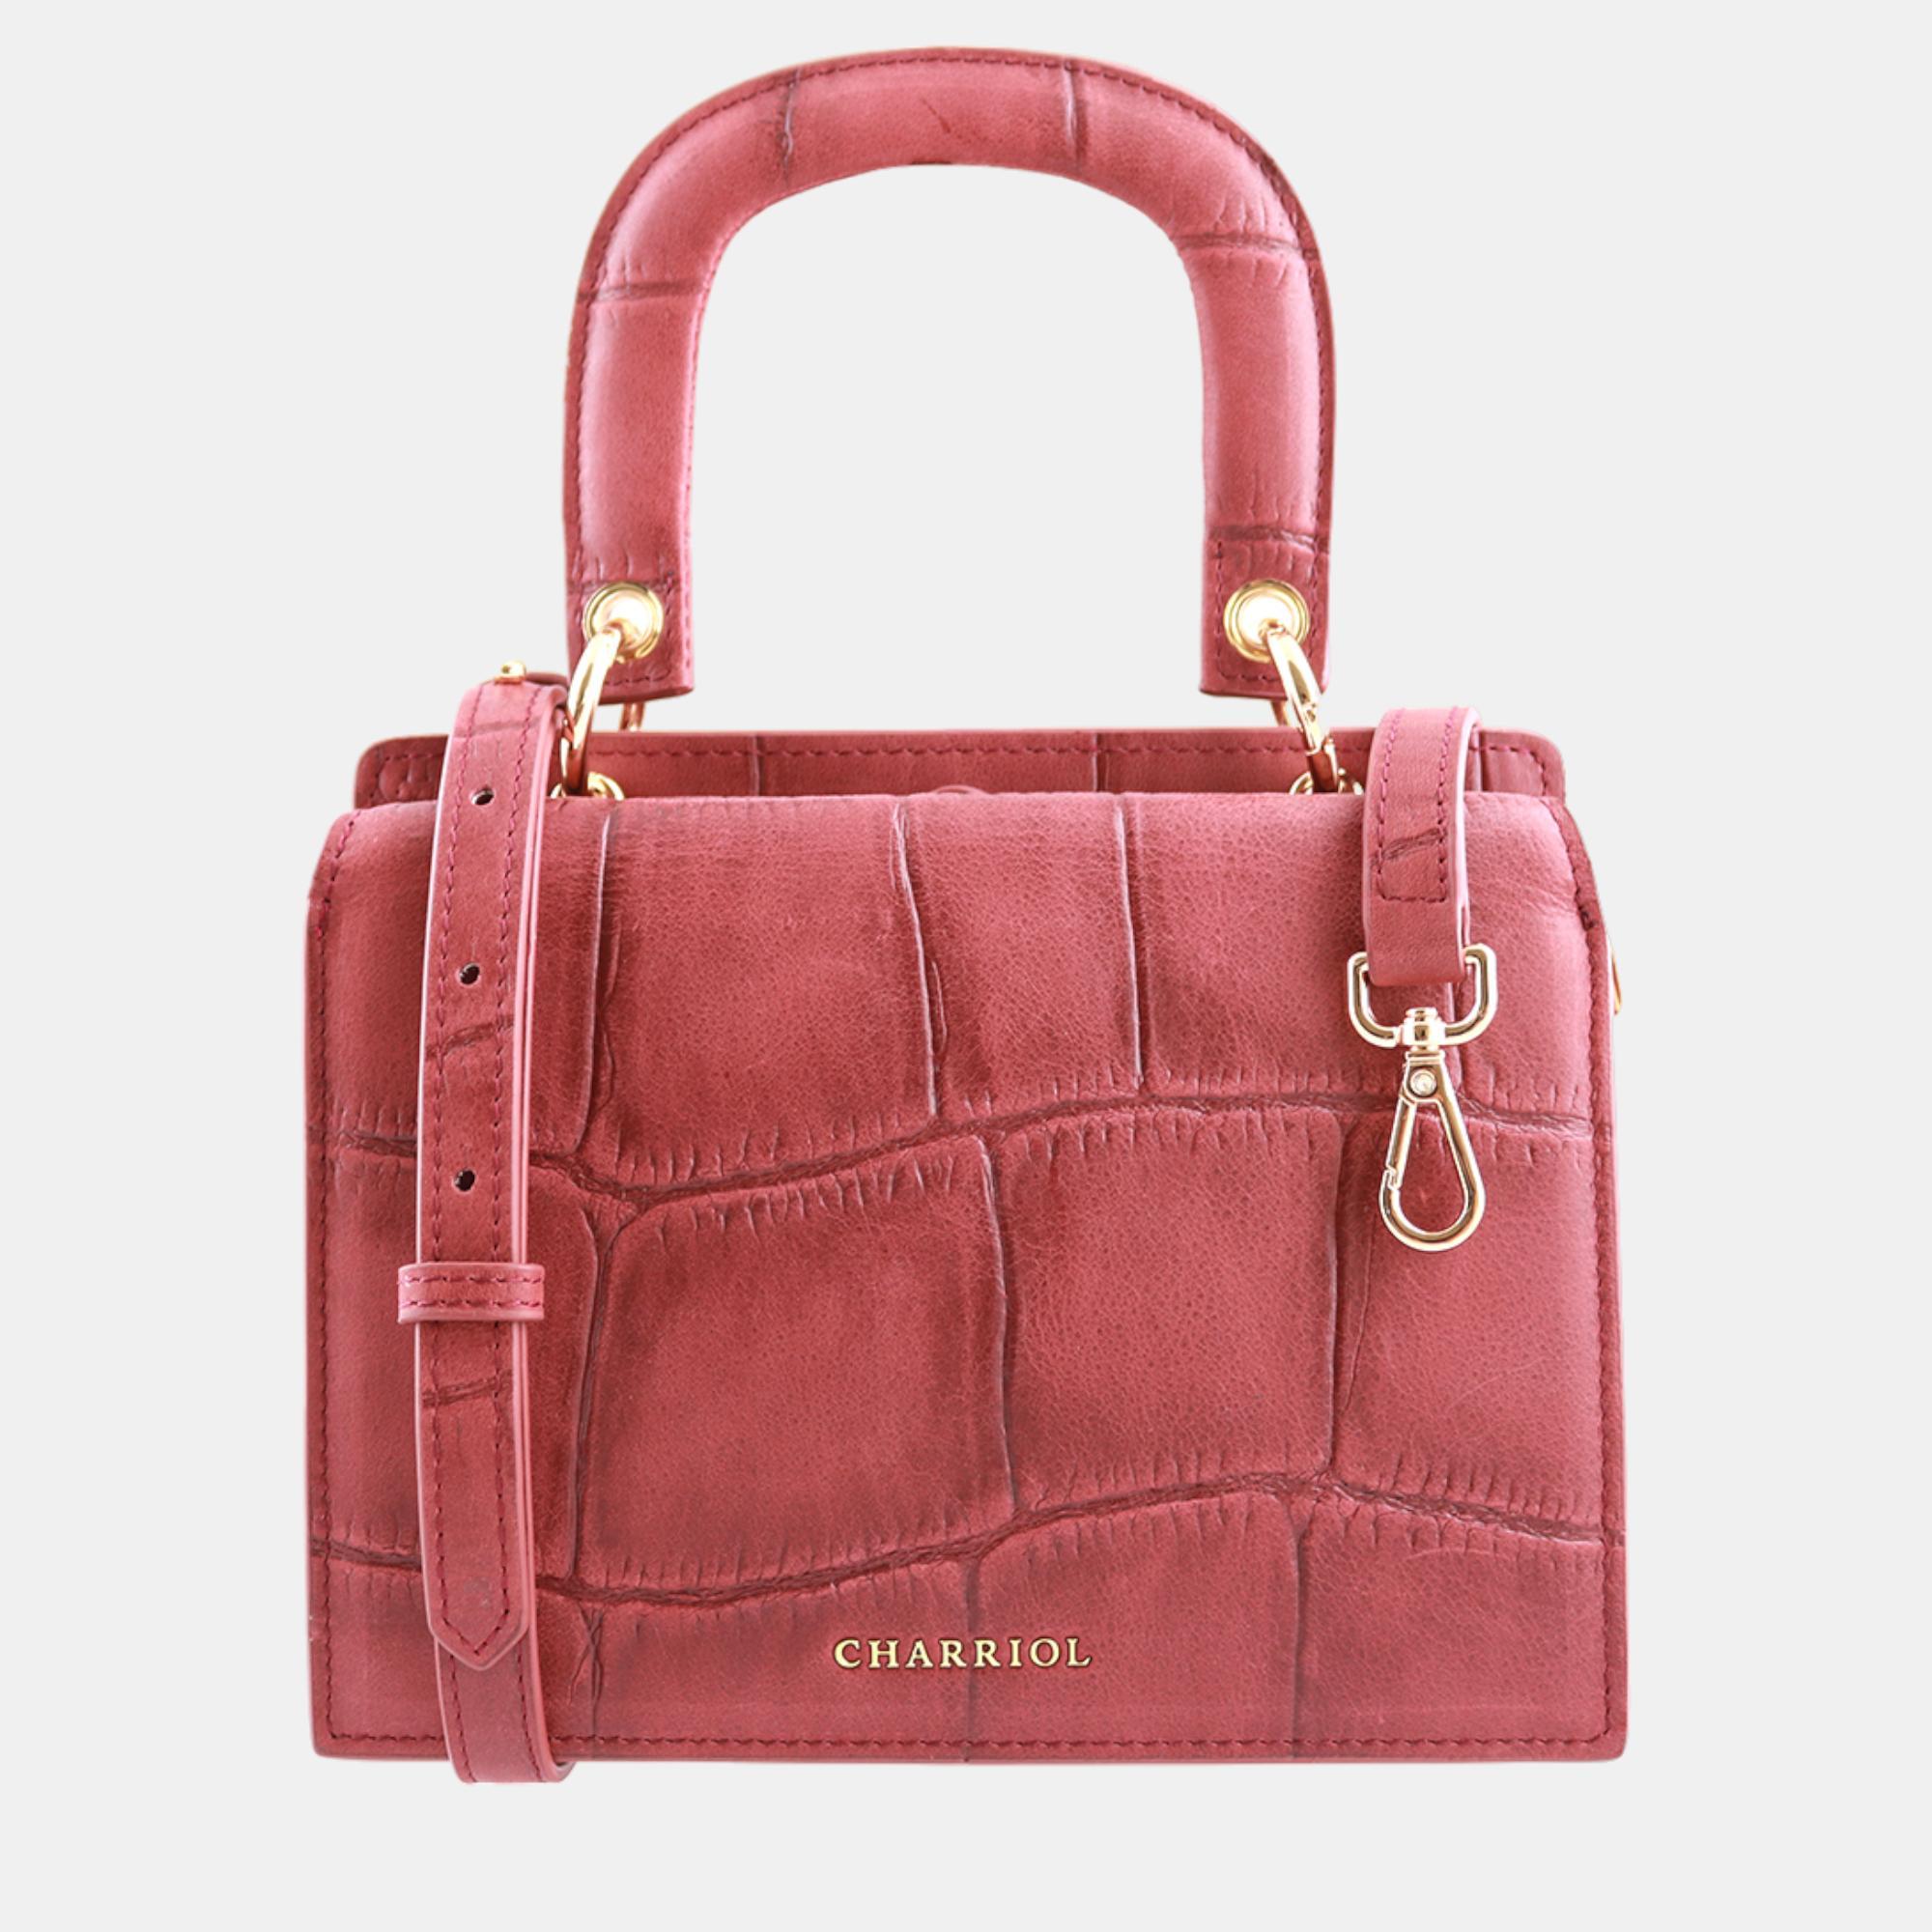 Charriol bordeaux leather passion handbag